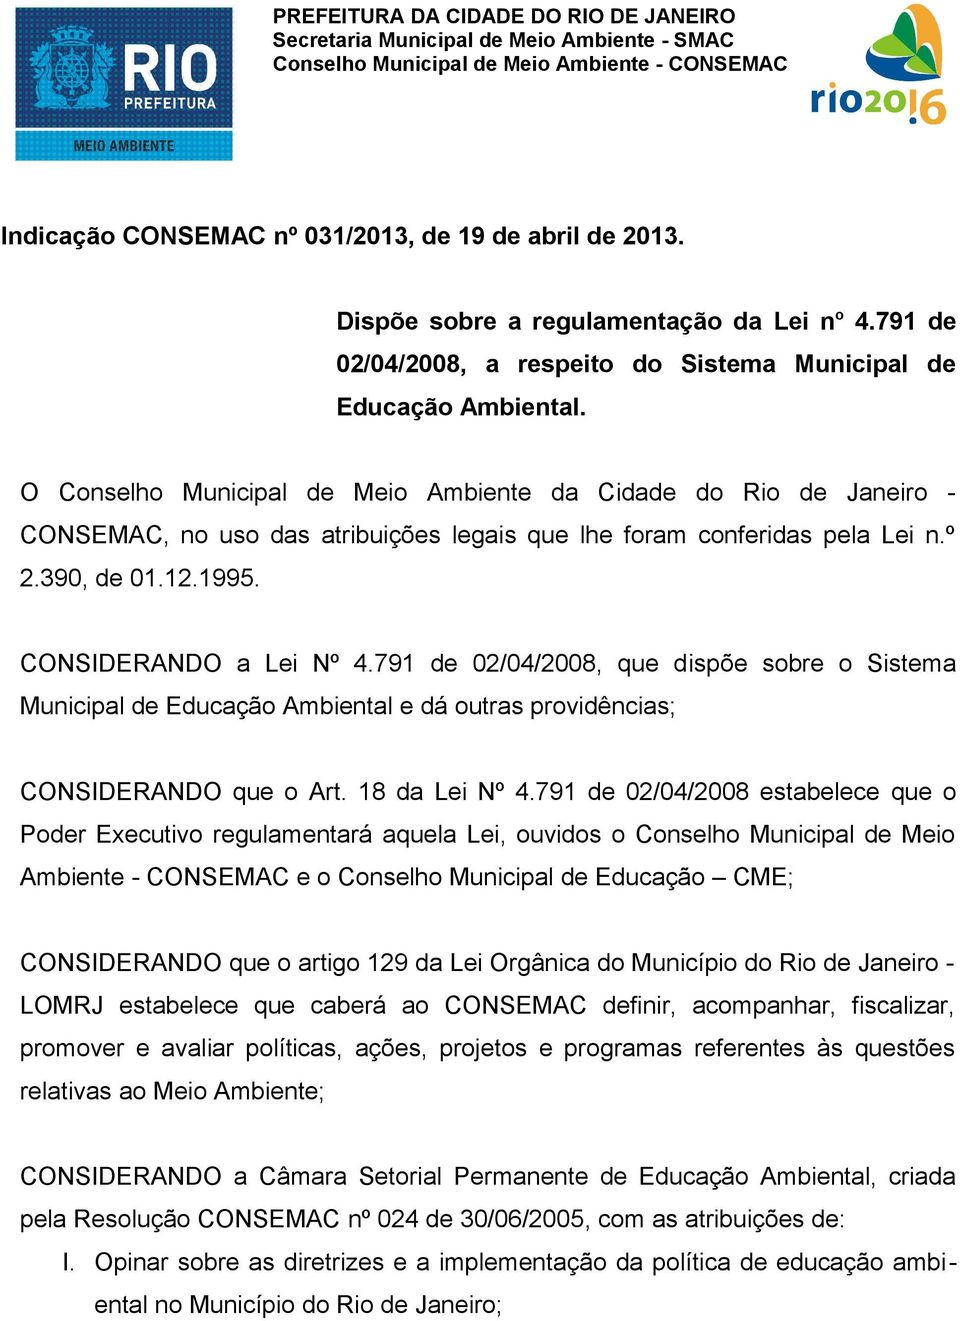 O Conselho Municipal de Meio Ambiente da Cidade do Rio de Janeiro - CONSEMAC, no uso das atribuições legais que lhe foram conferidas pela Lei n.º 2.390, de 01.12.1995. CONSIDERANDO a Lei Nº 4.